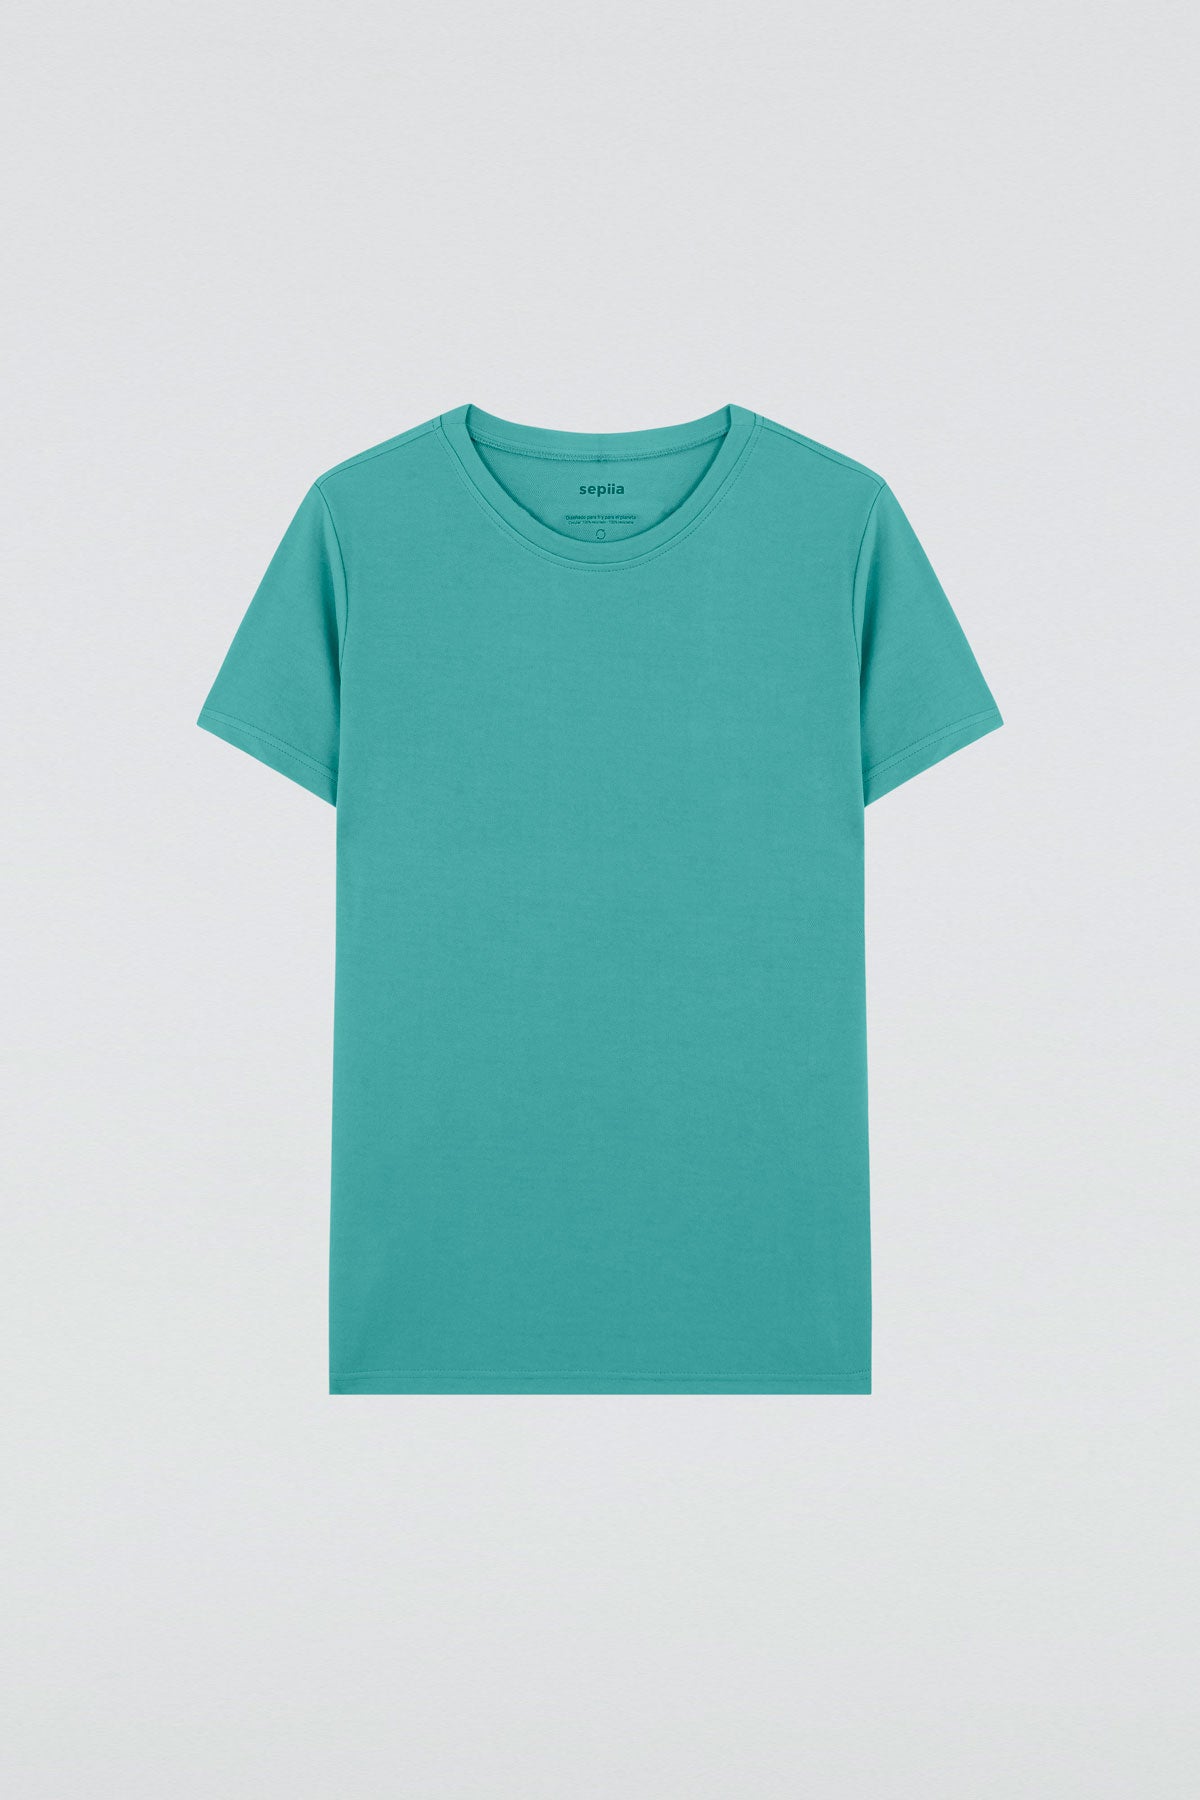 Camiseta básica de mujer verde clorofila de manga corta y cuello redondo, perfecta para cualquier look. Foto plano